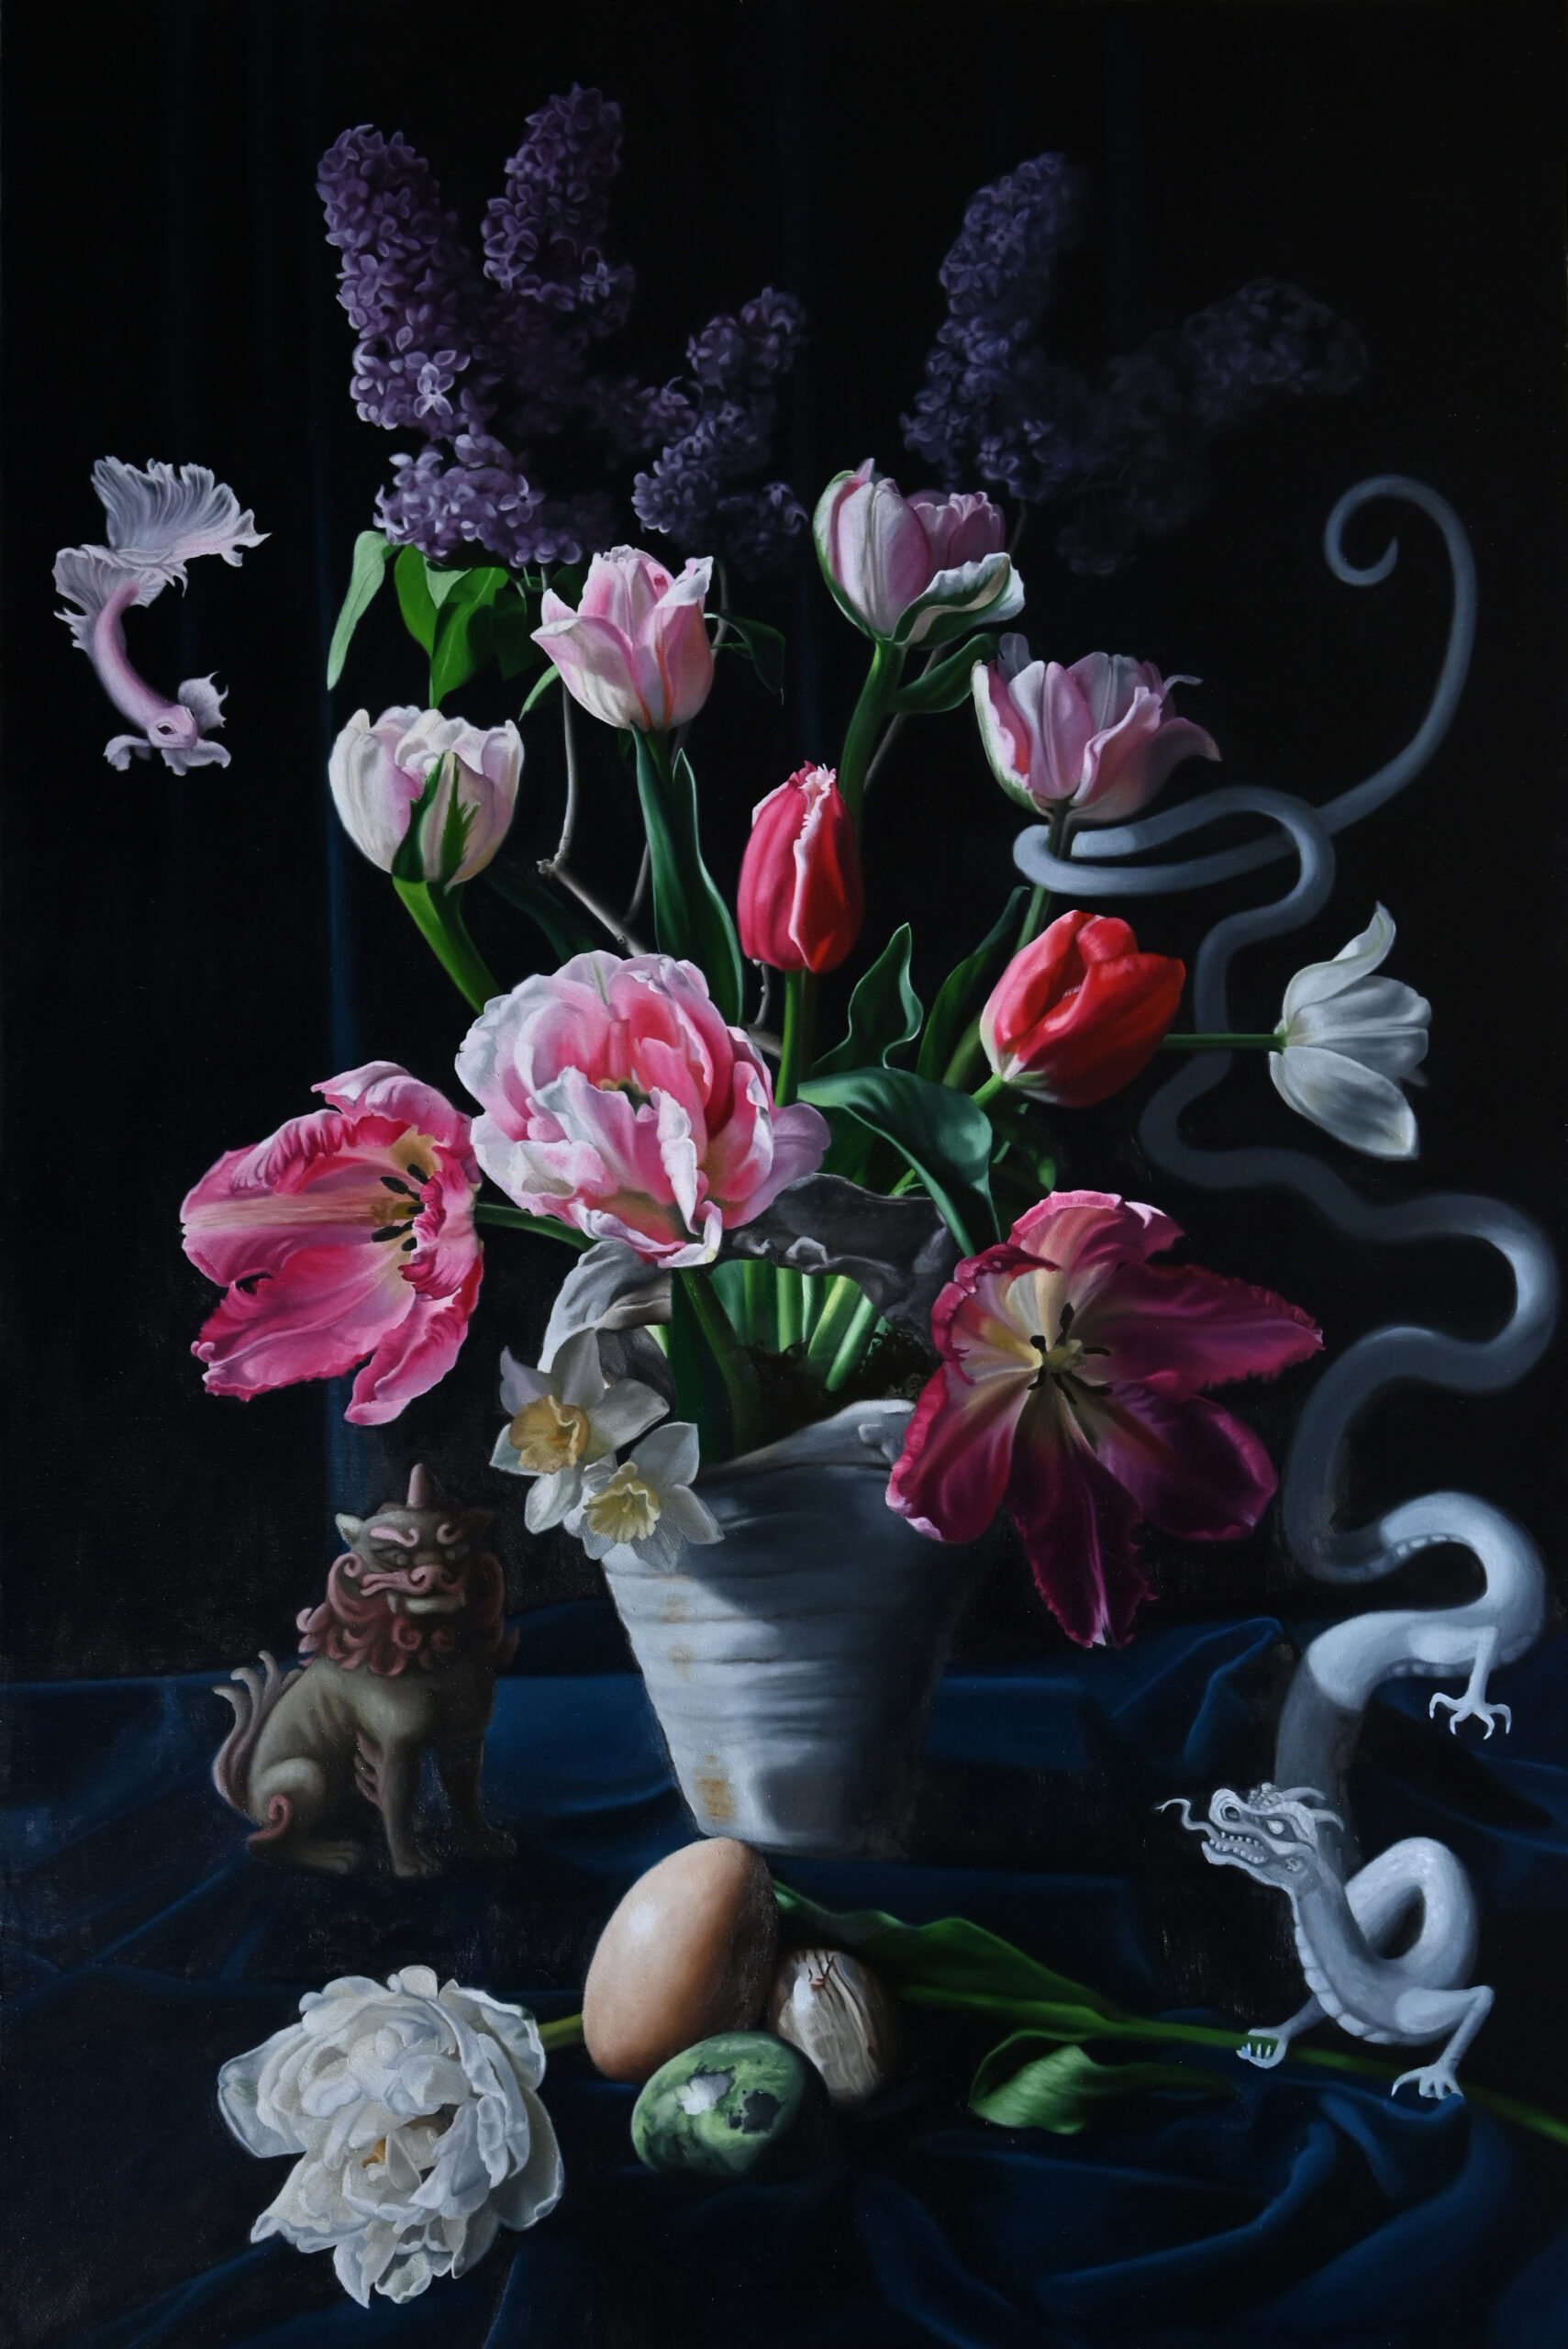 Jordan Baker, "Spring Spirits," Oil on Canvas, 36 x 48 in., 2023